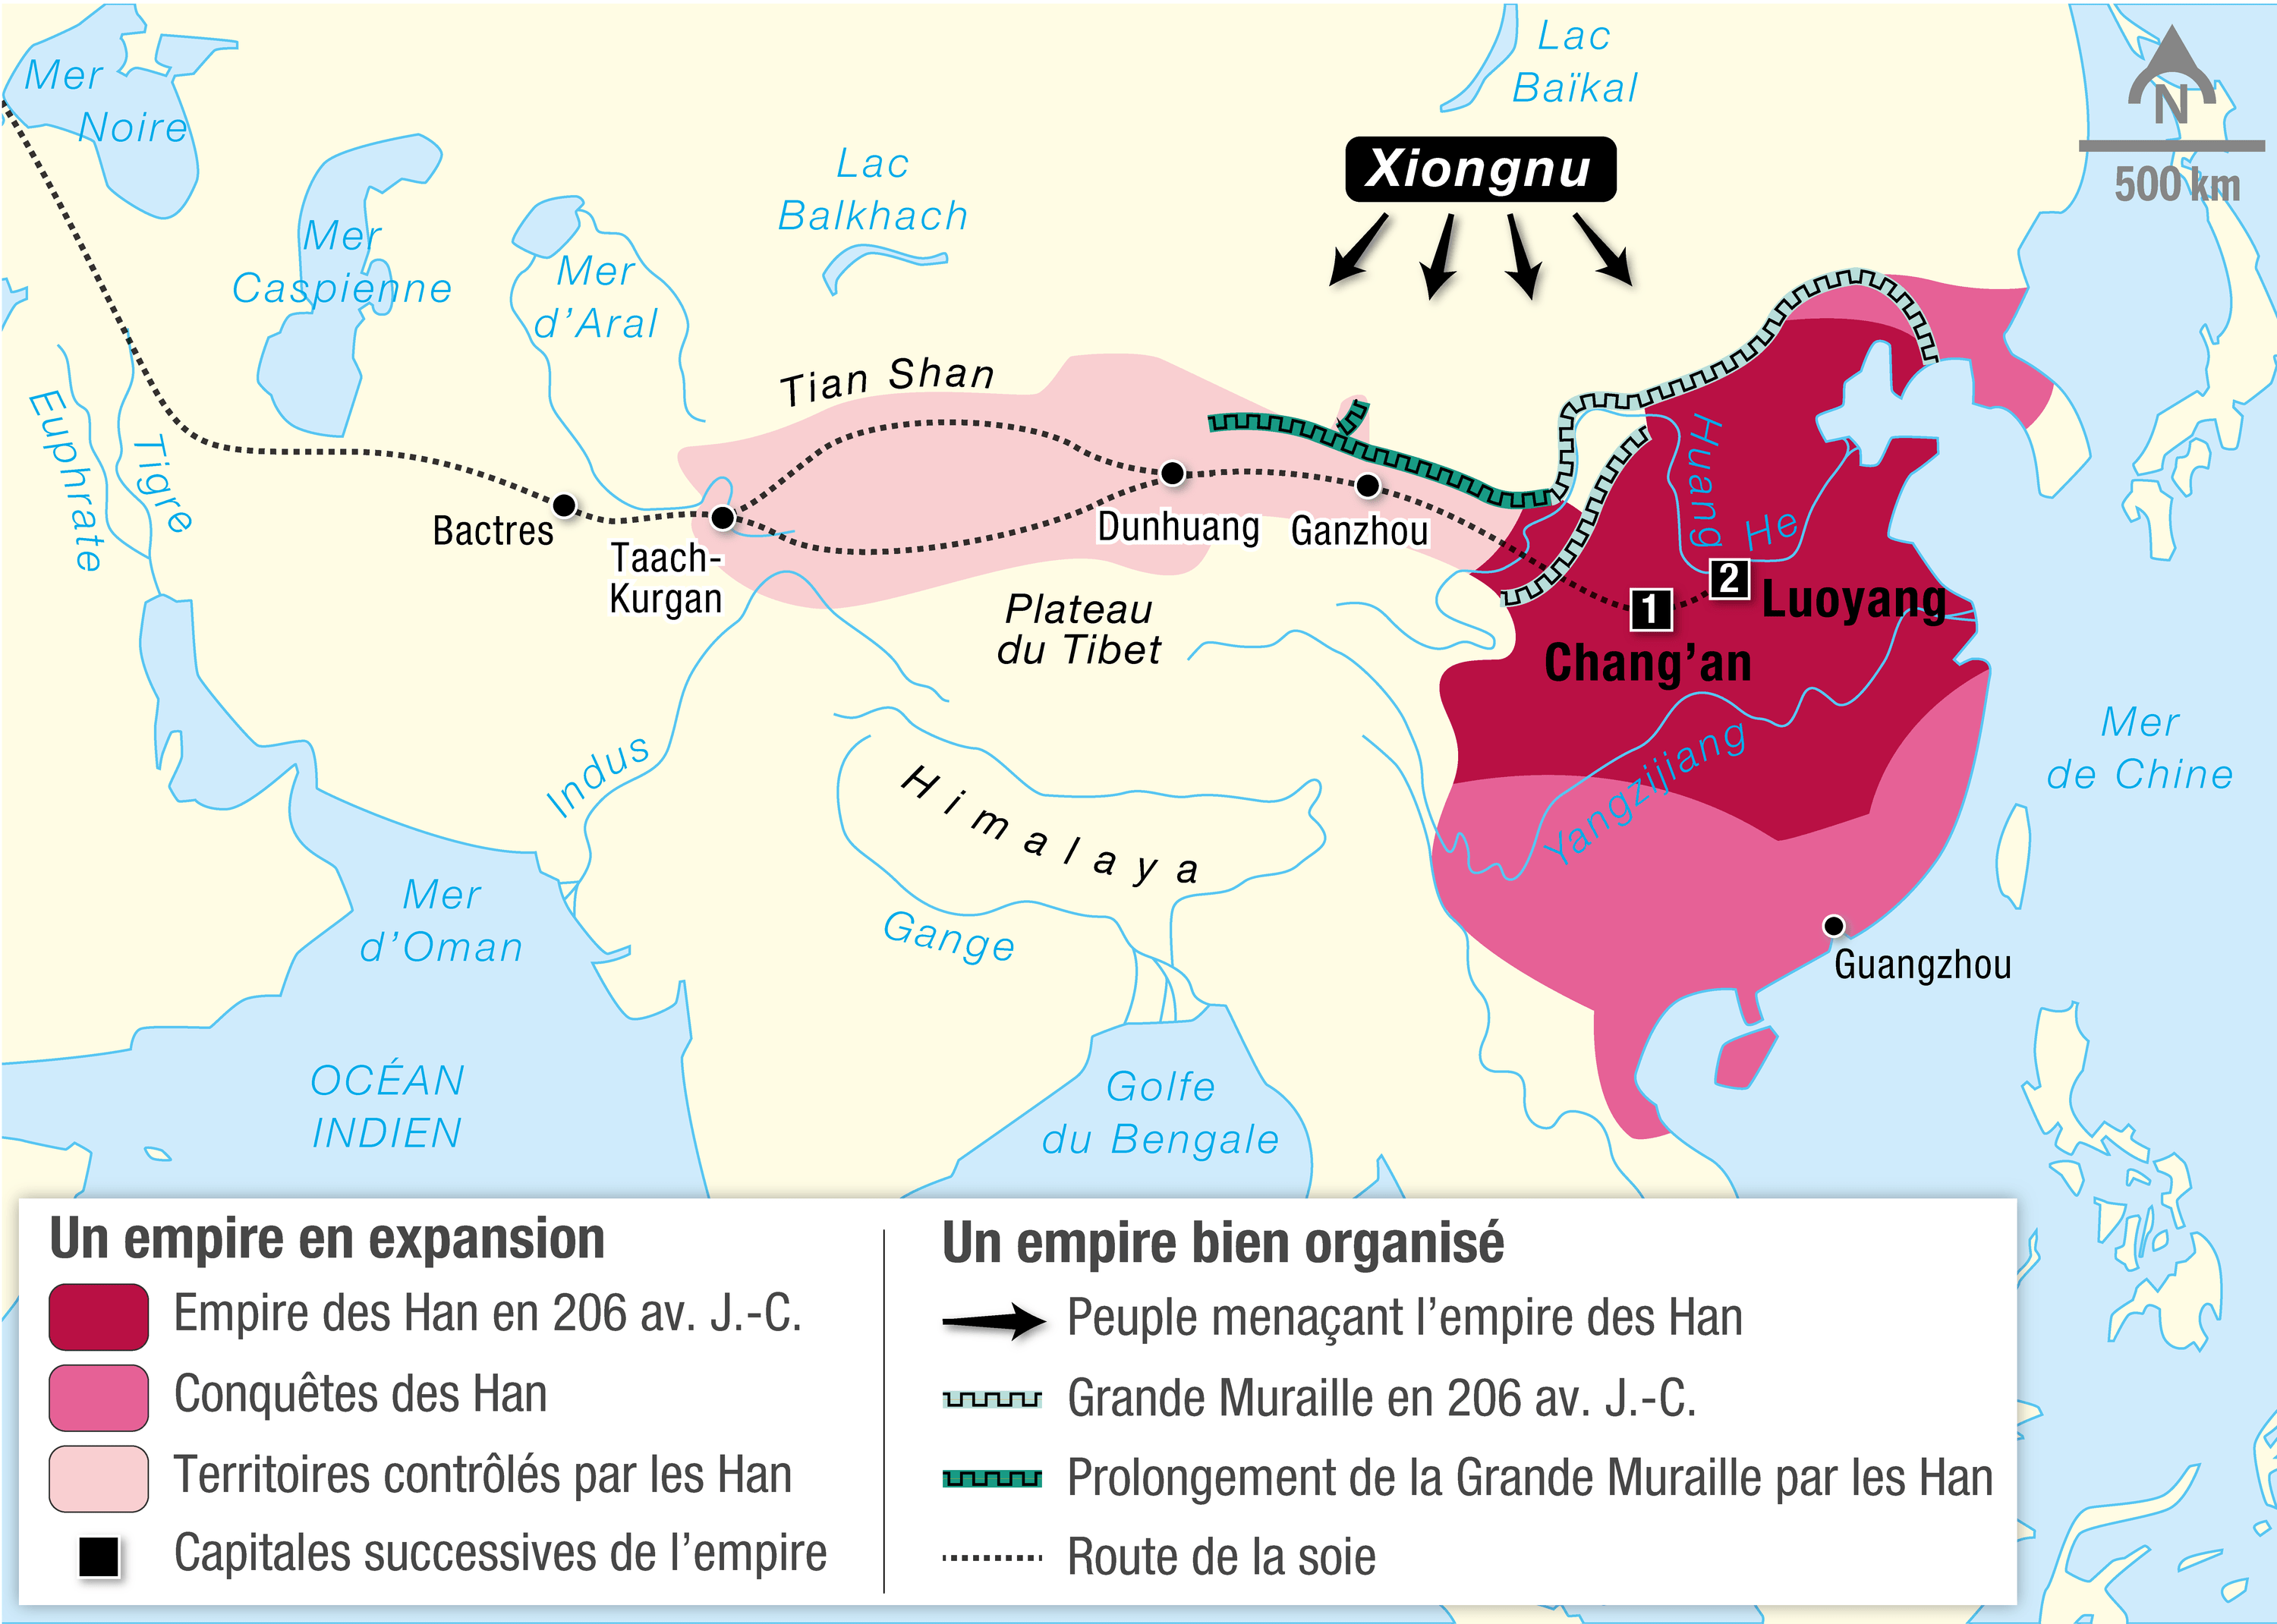 Perspectives de Ouïghours sur les relations Han-Ouïghour en Chine